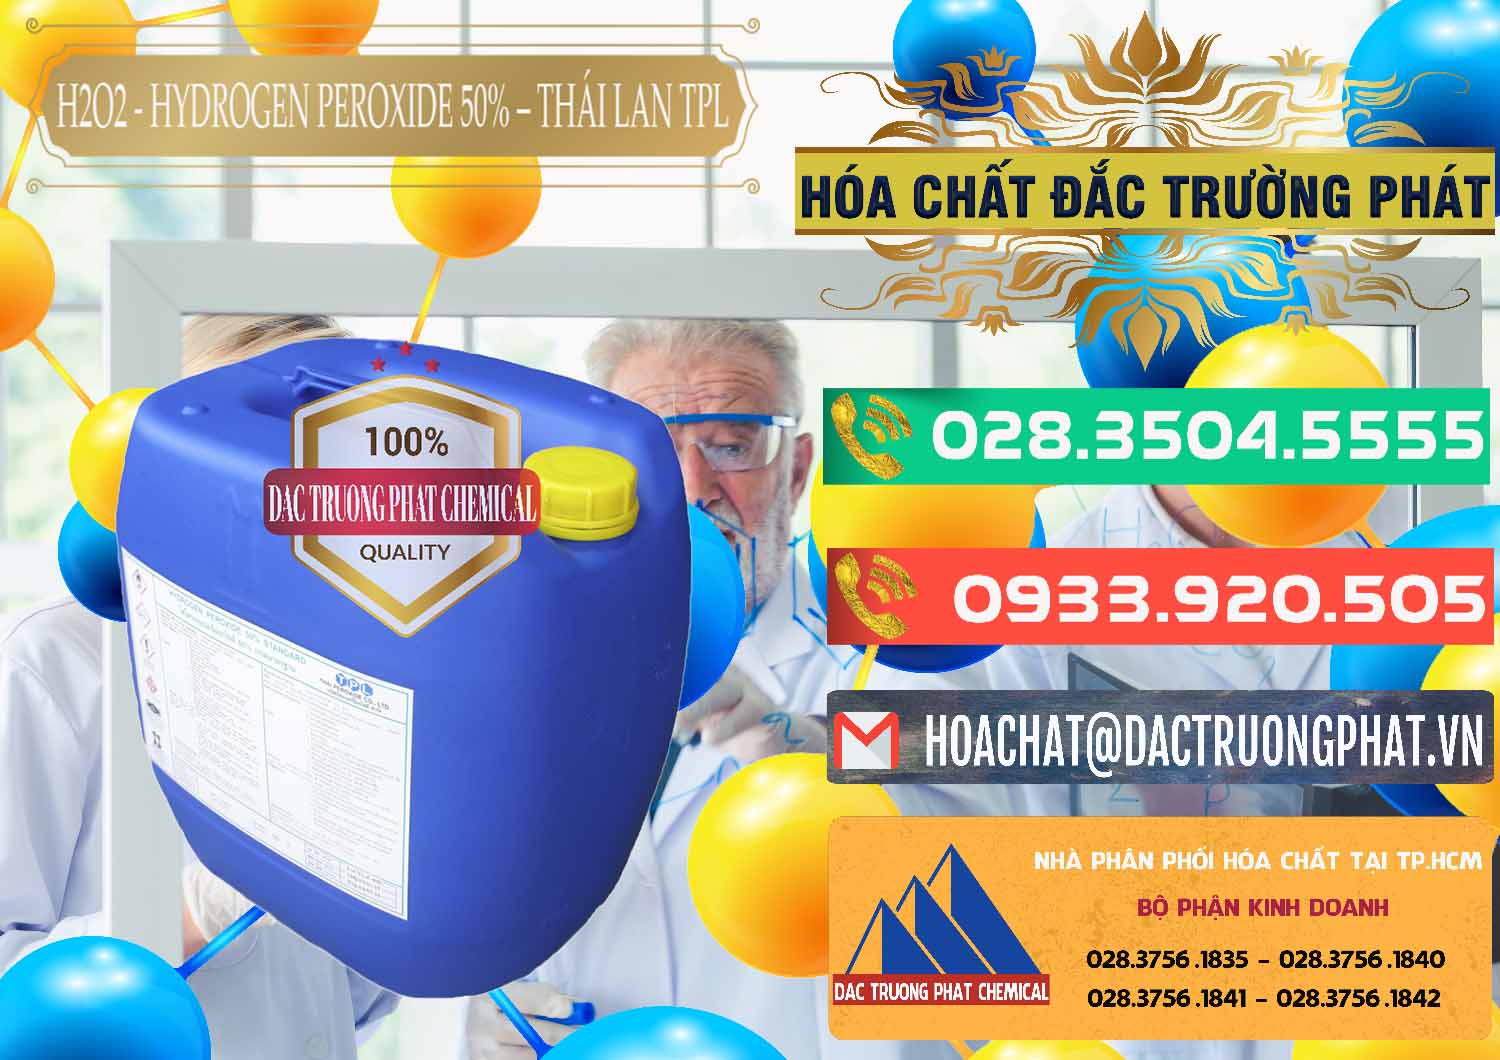 Công ty chuyên kinh doanh và bán H2O2 - Hydrogen Peroxide 50% Thái Lan TPL - 0076 - Đơn vị chuyên cung cấp & bán hóa chất tại TP.HCM - congtyhoachat.com.vn